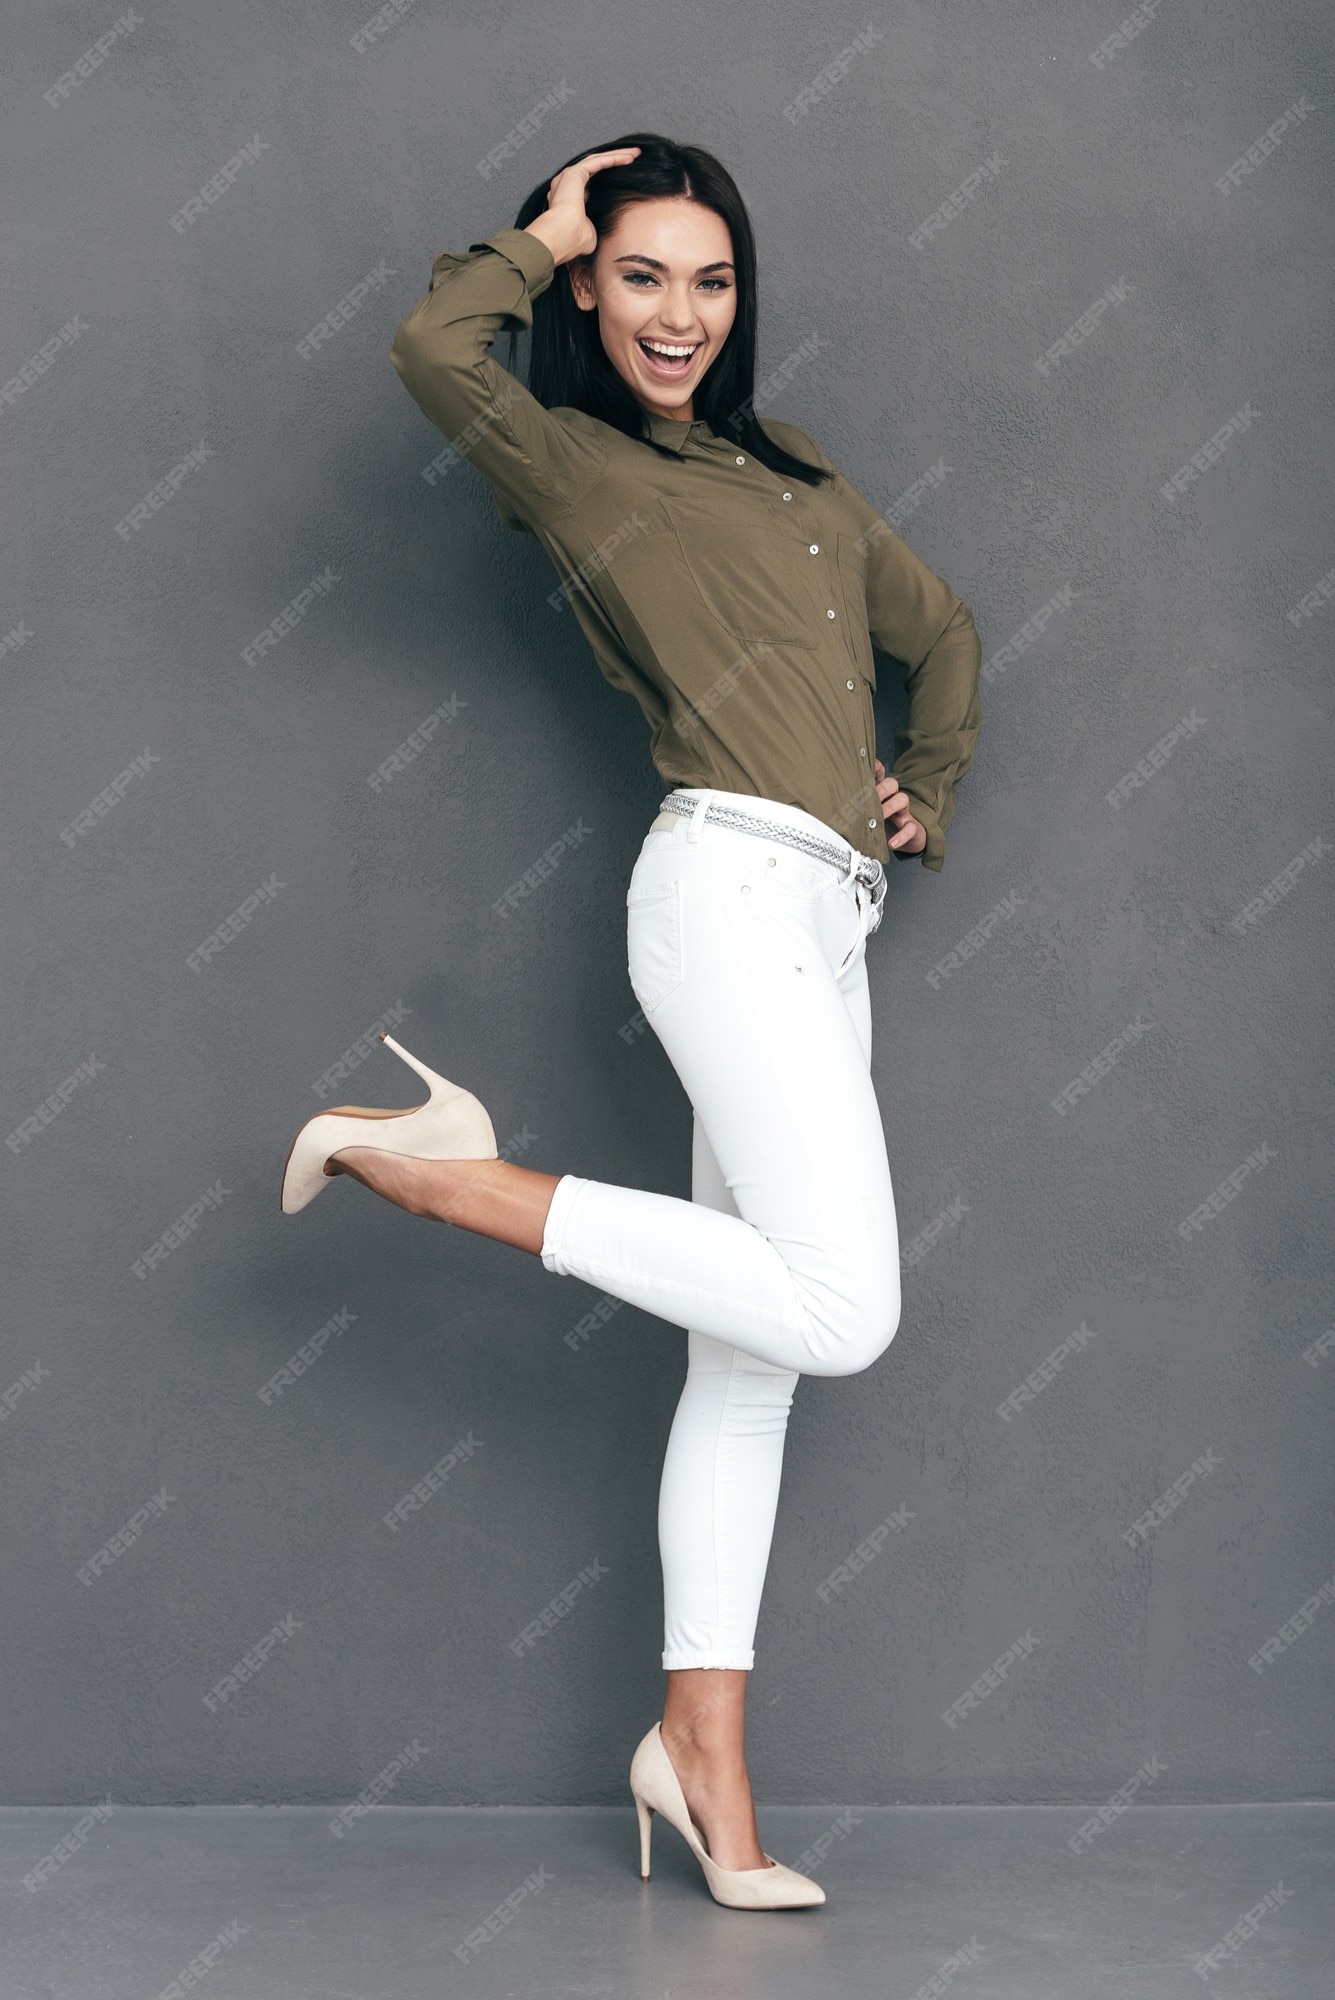 Belleza longitud total de mujer joven atractiva en ropa de sport elegante posando sobre fondo gris y mirando feliz | Foto Premium